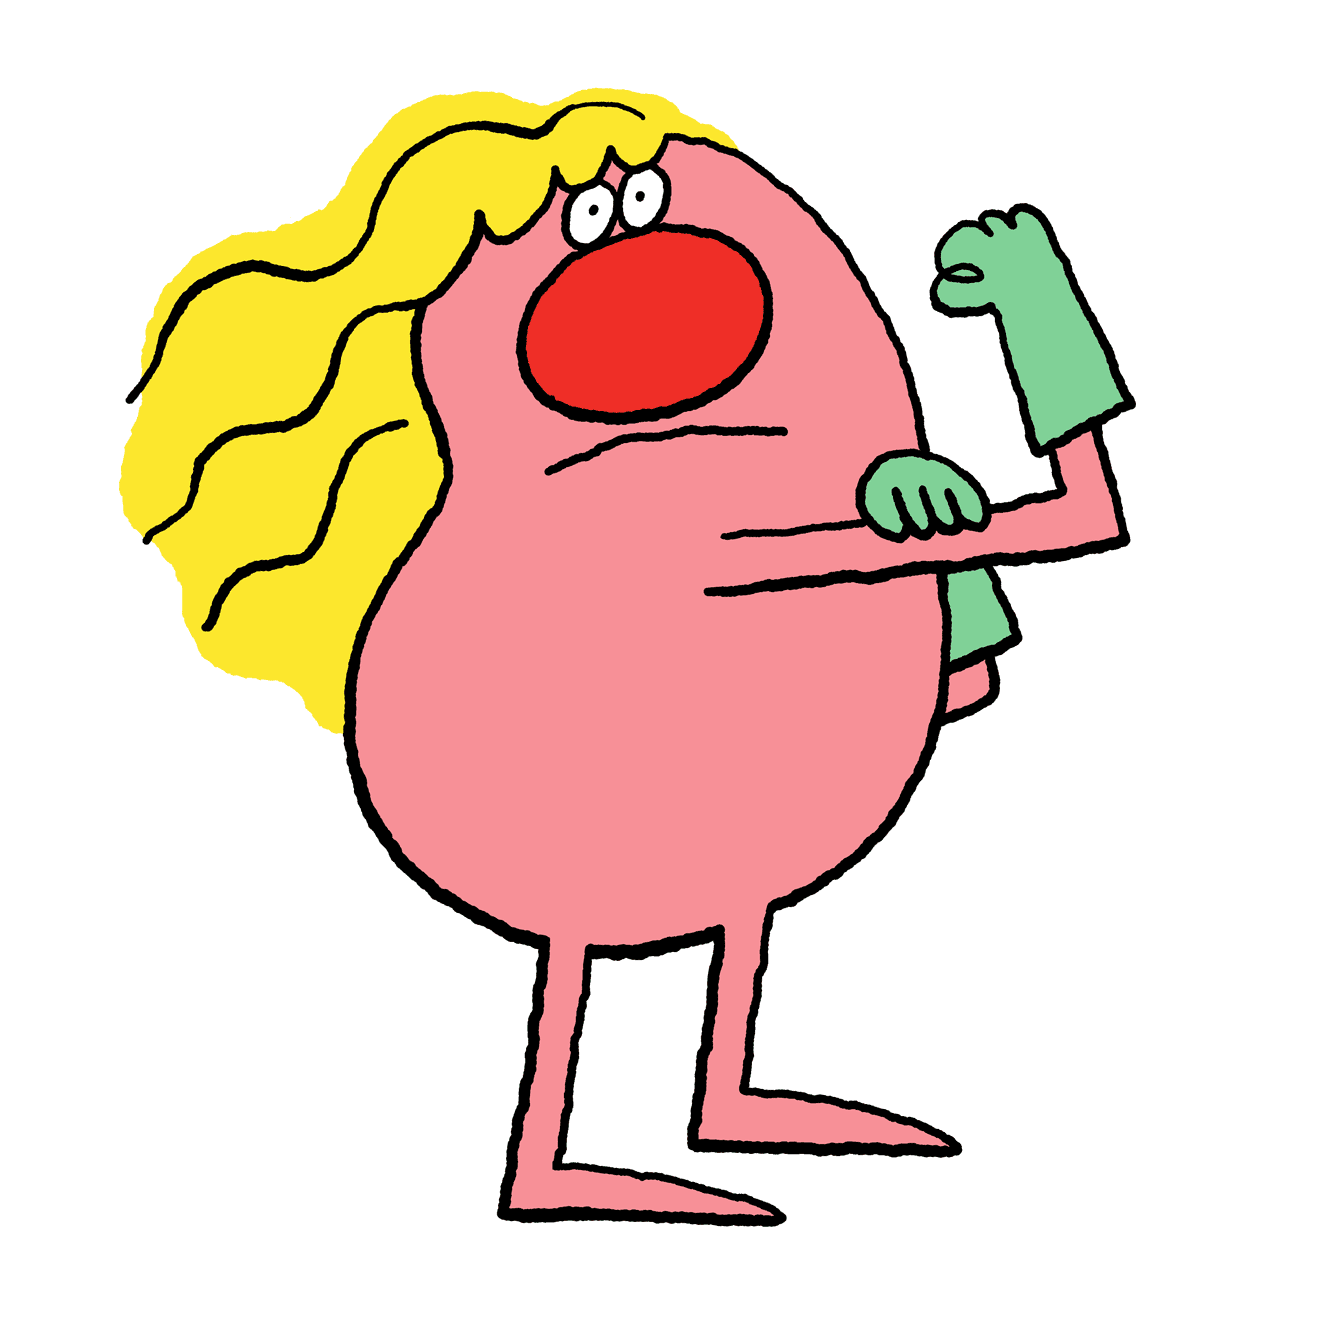 animierte Illustration zeigt eine kleine Figur mit knallroter Kartoffelnase und wallendem blonden Haar. Die Arme zu einer kämpferischen Geste, die Hand in Latexhandschuhe gekleidet und zur Faust geballt.